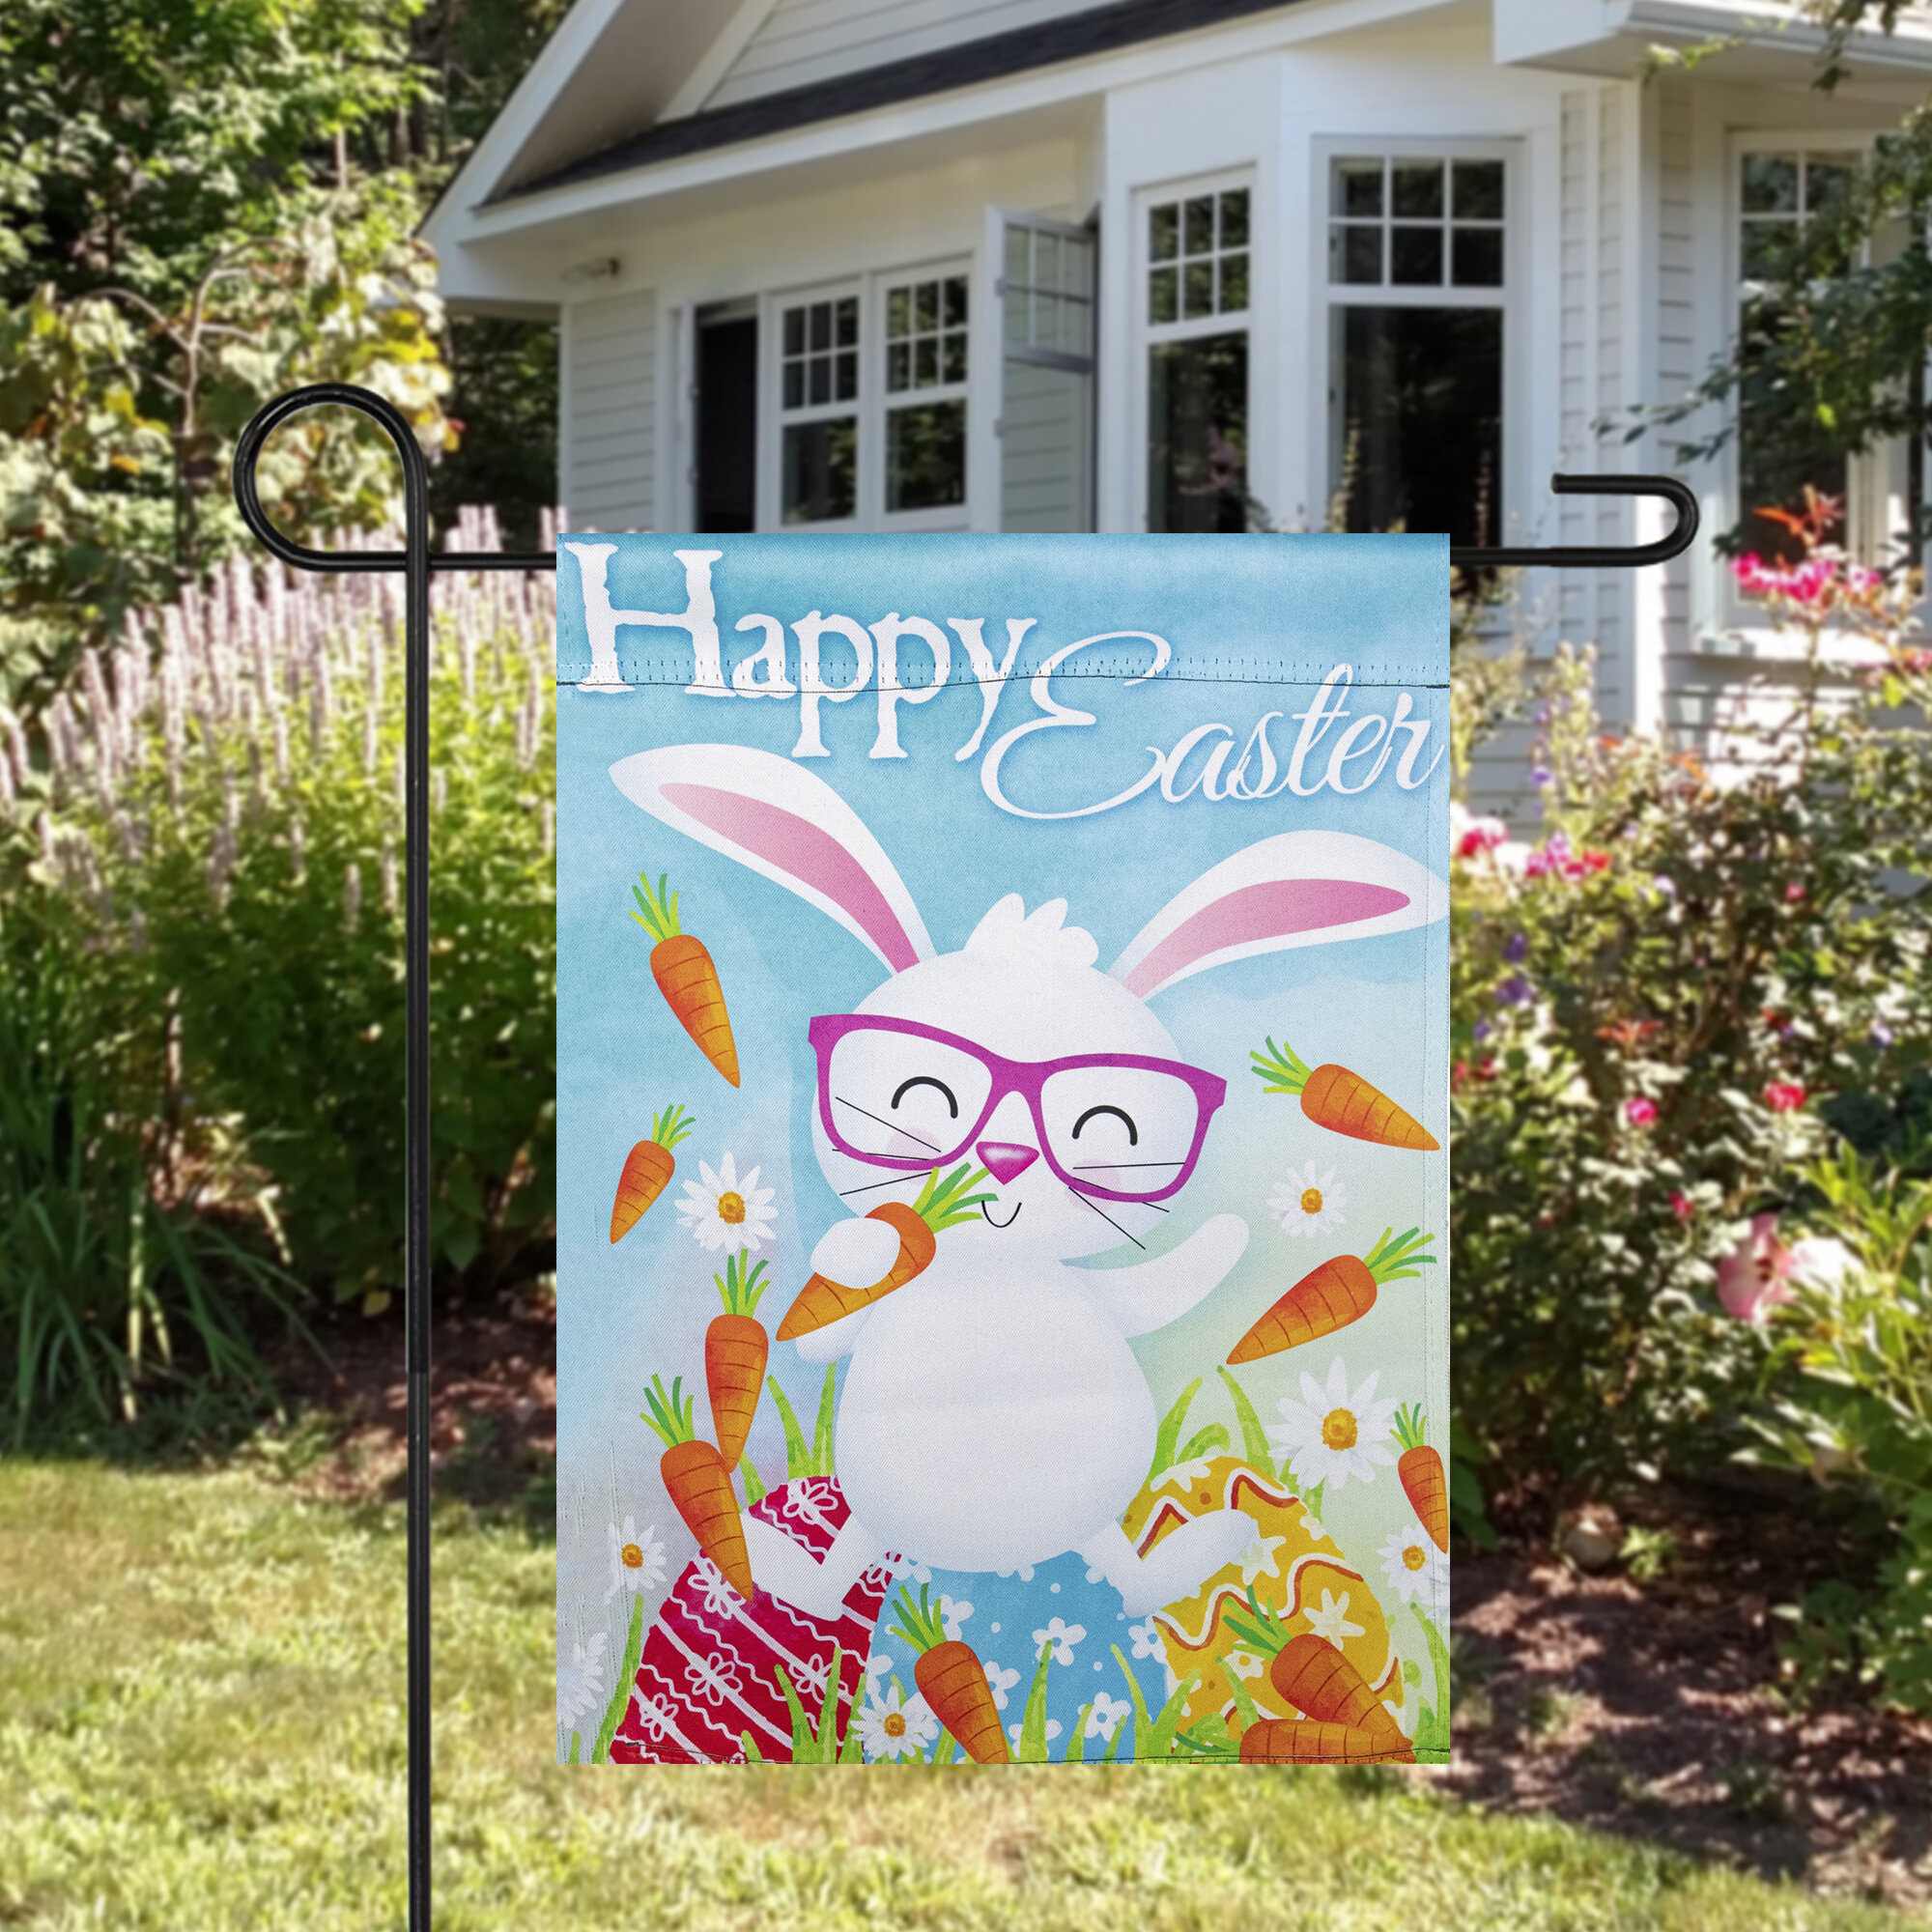 Happy Easter Wreath Bunny Eggs Double Sided Holiday Garden Flag Decor 12.5"x18" 